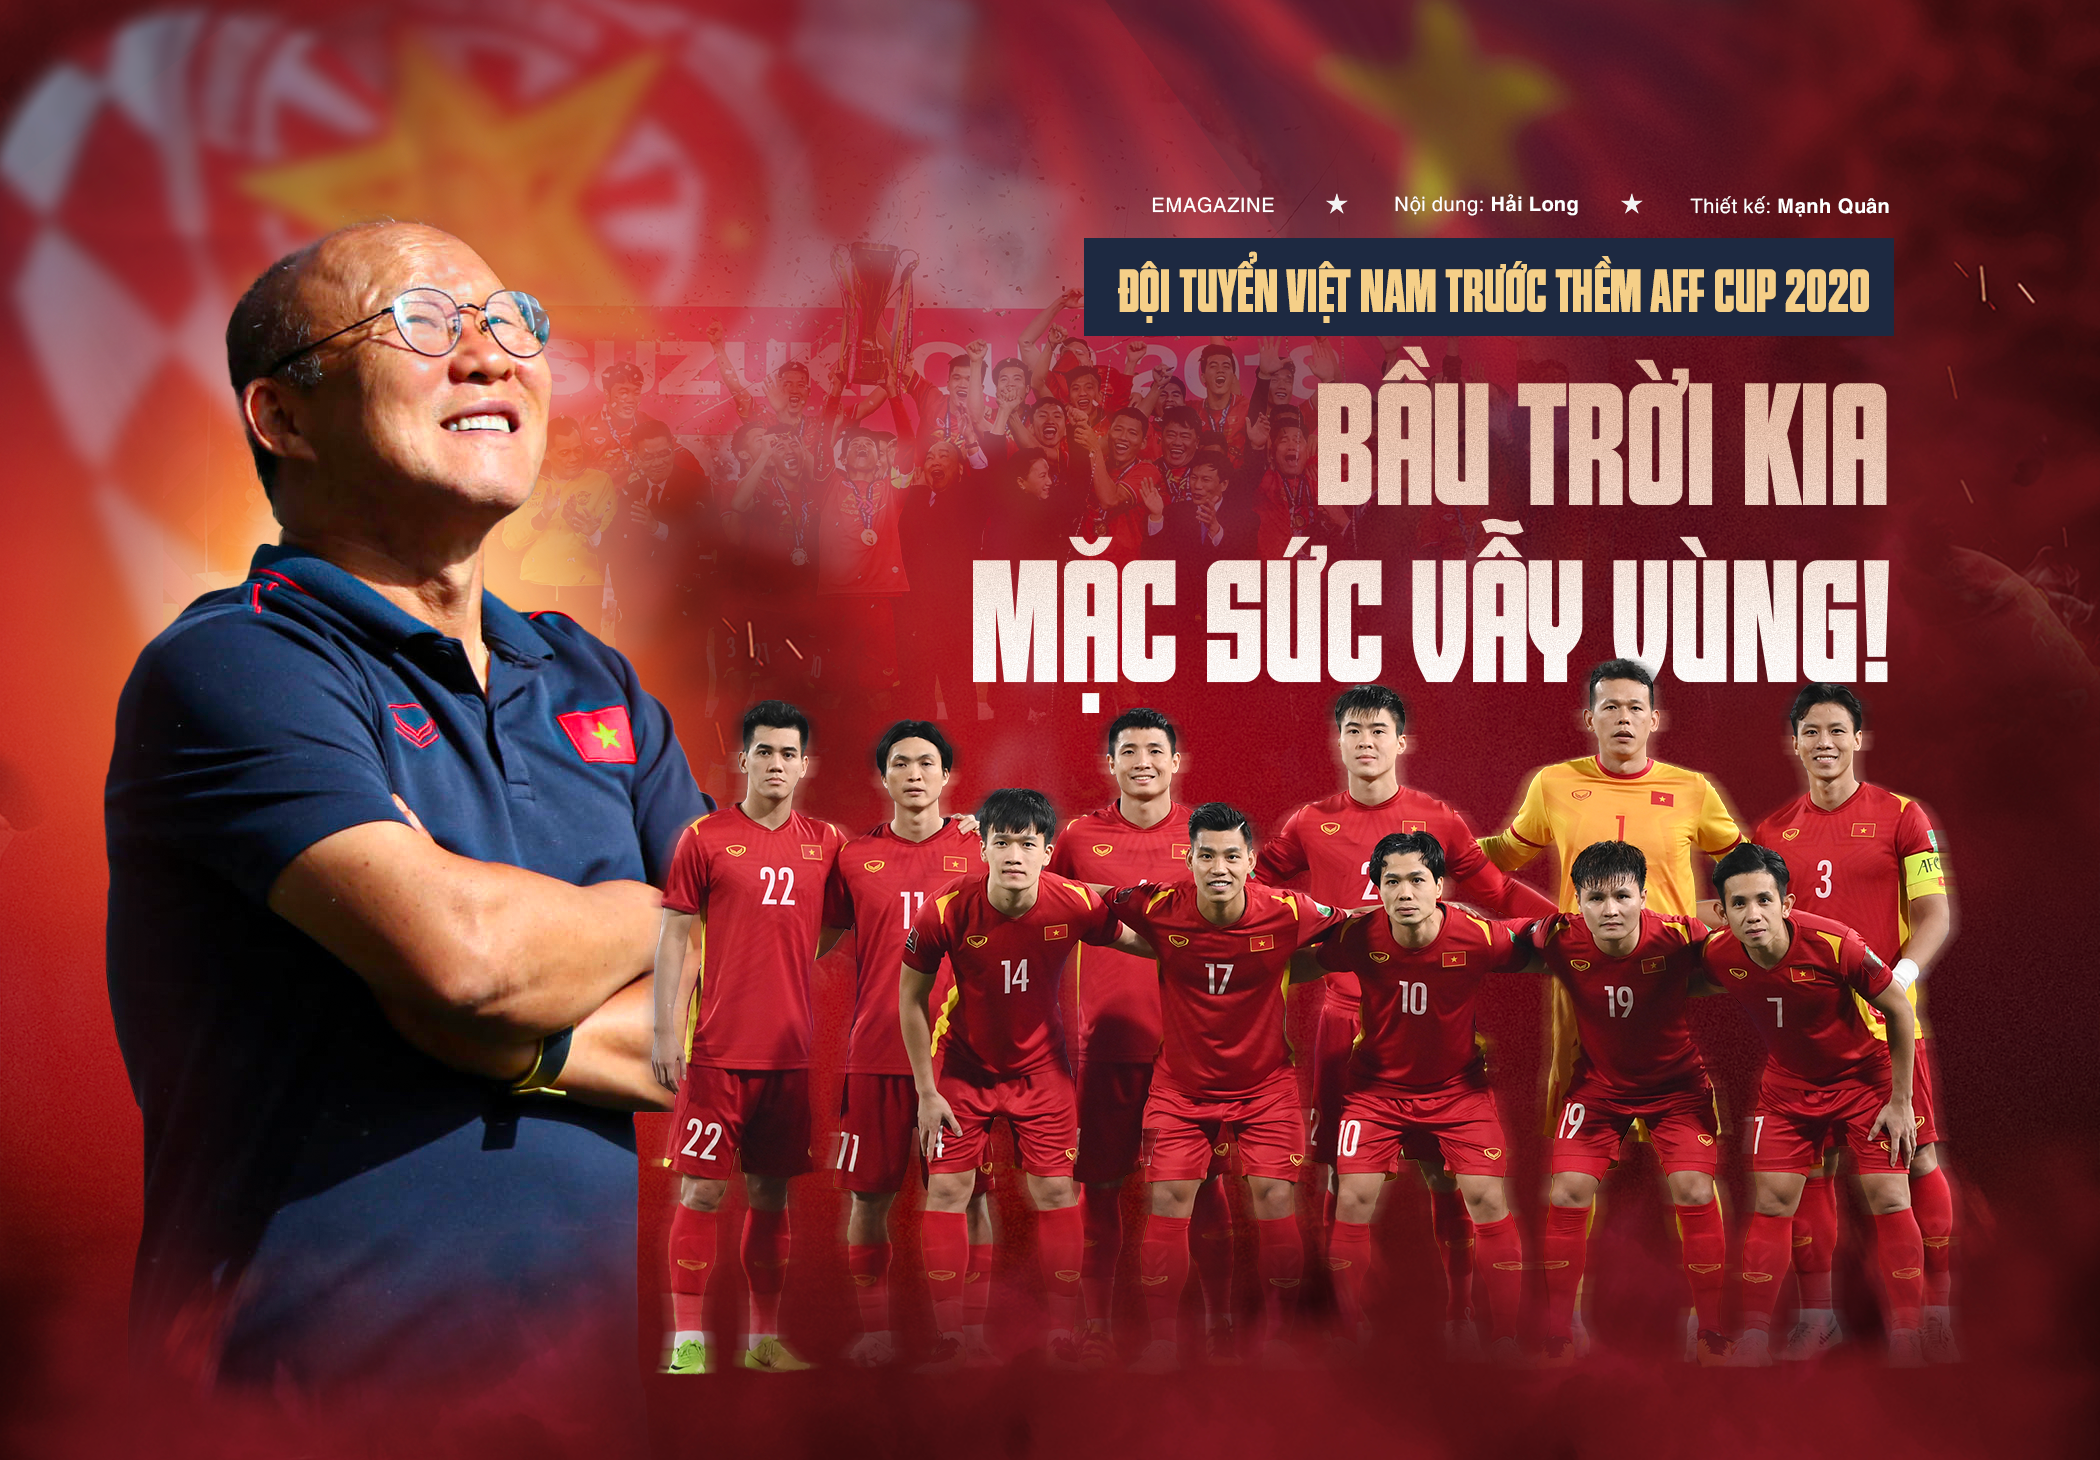 Đội tuyển Việt Nam trước AFF Cup 2020: Bầu trời kia, mặc sức vẫy vùng!